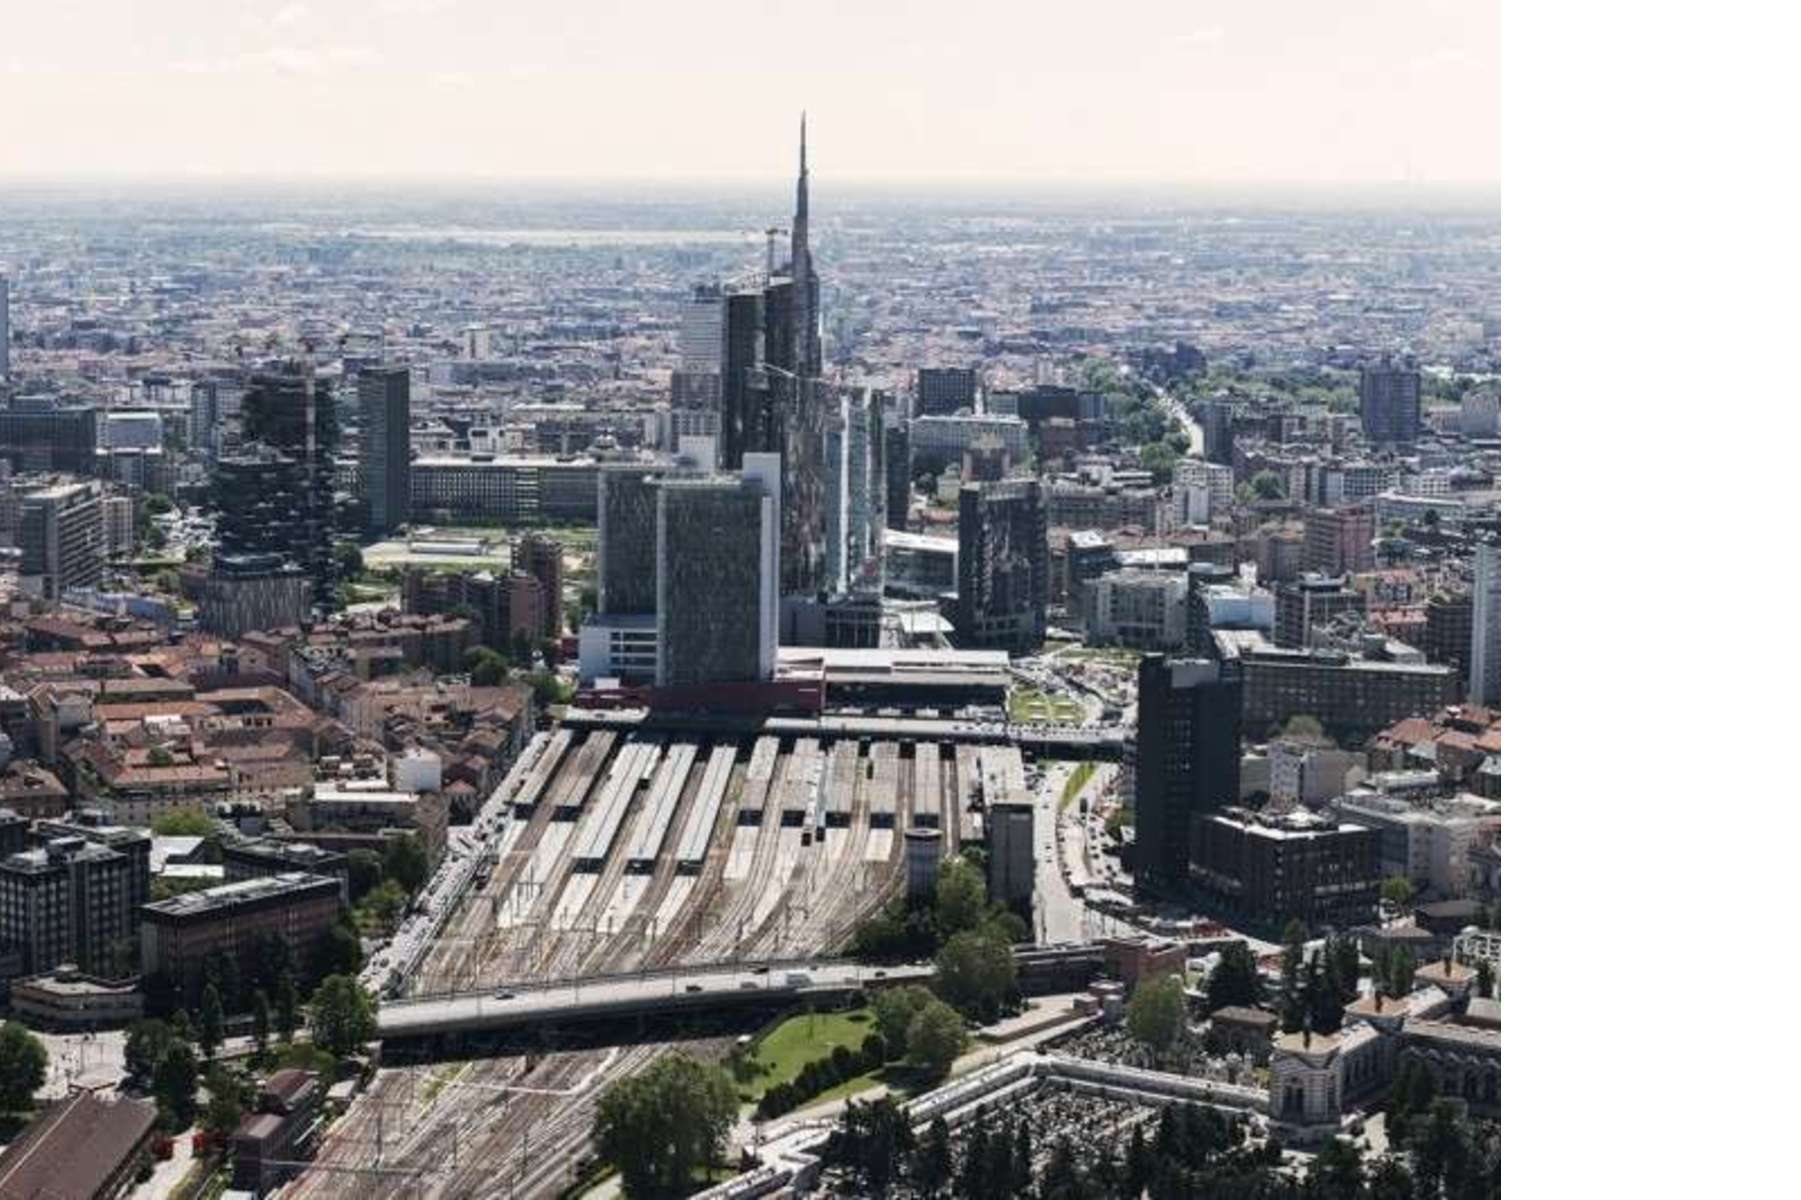 Cloudscraper: A century of skyscrapers in Milan exhibition ...